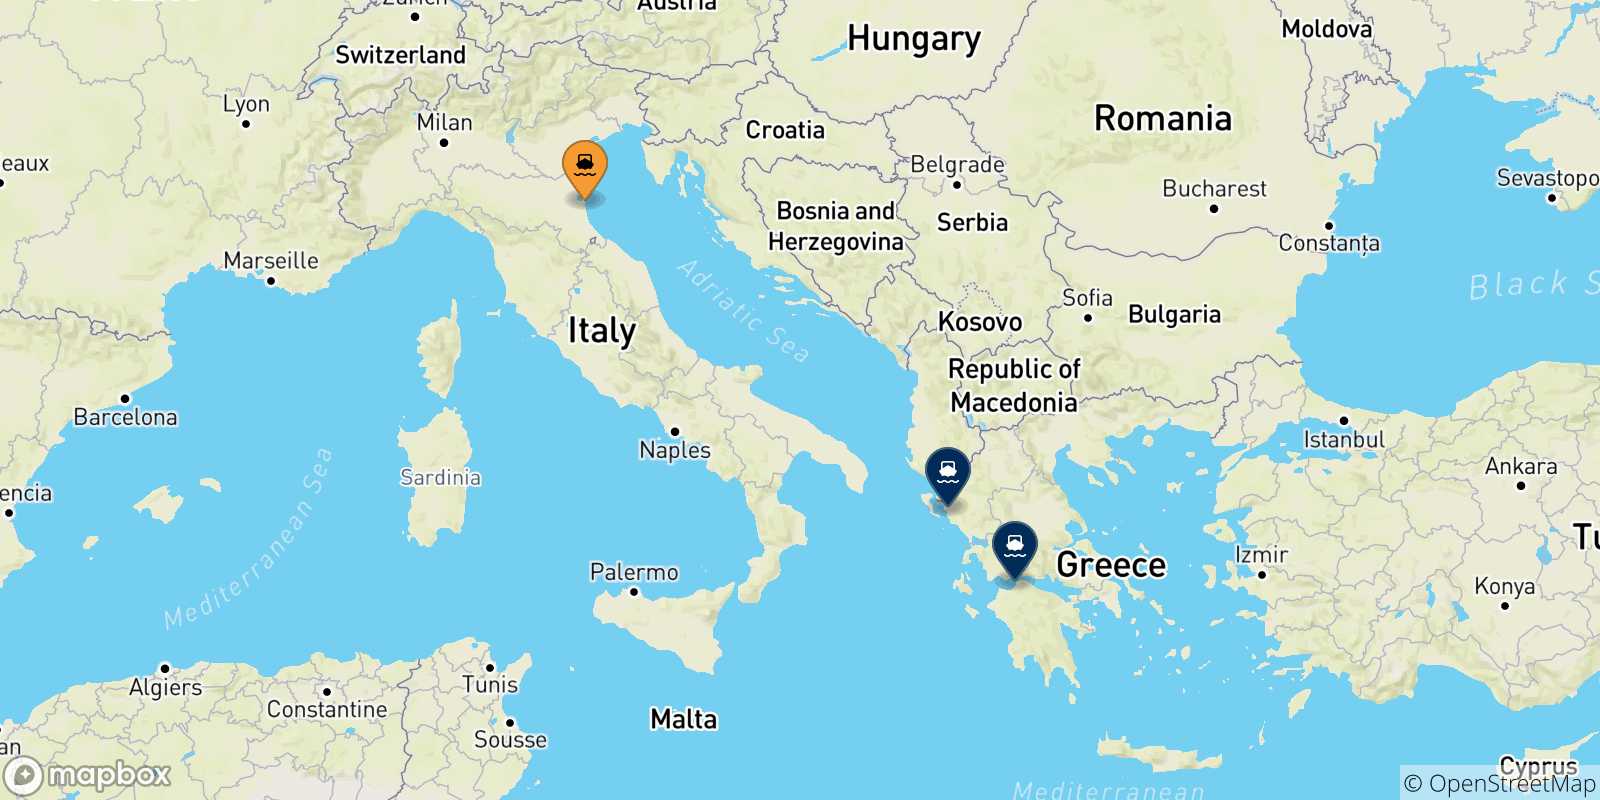 Mappa delle possibili rotte tra Ravenna e la Grecia